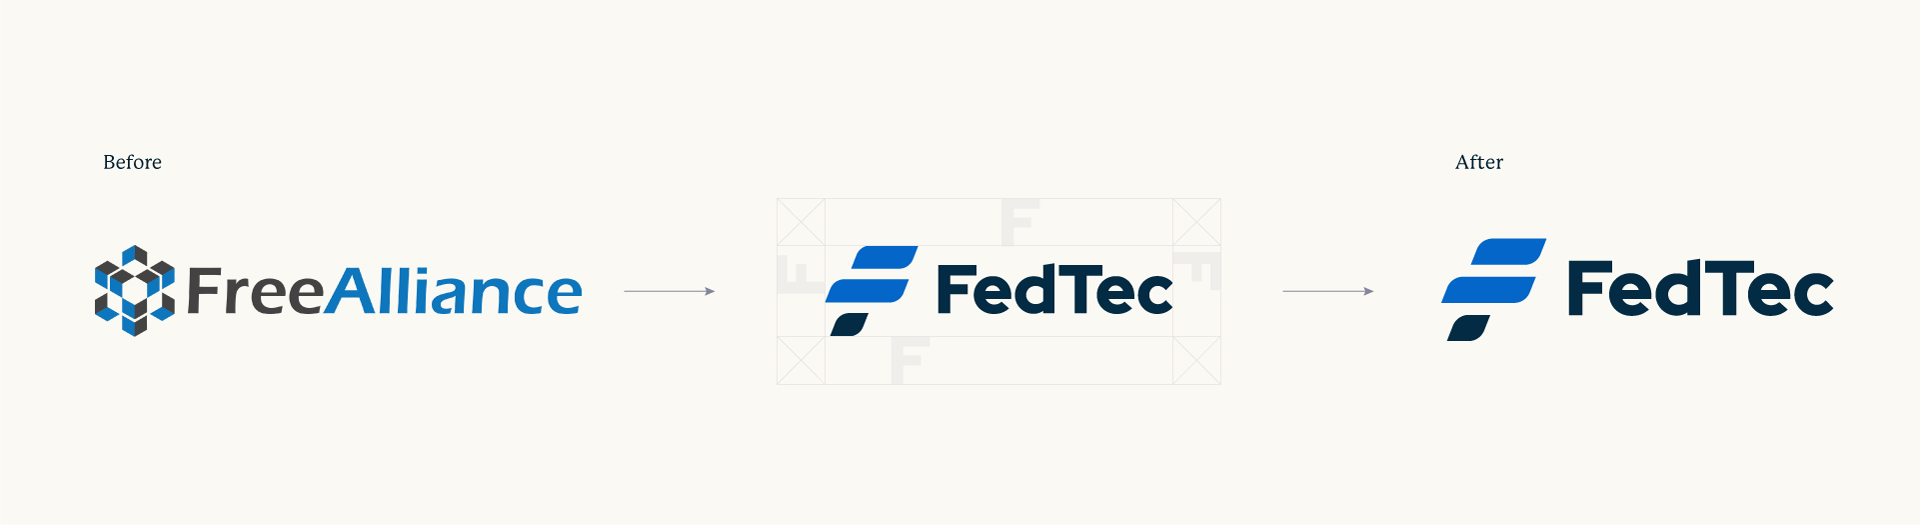 Fedtec-Logo